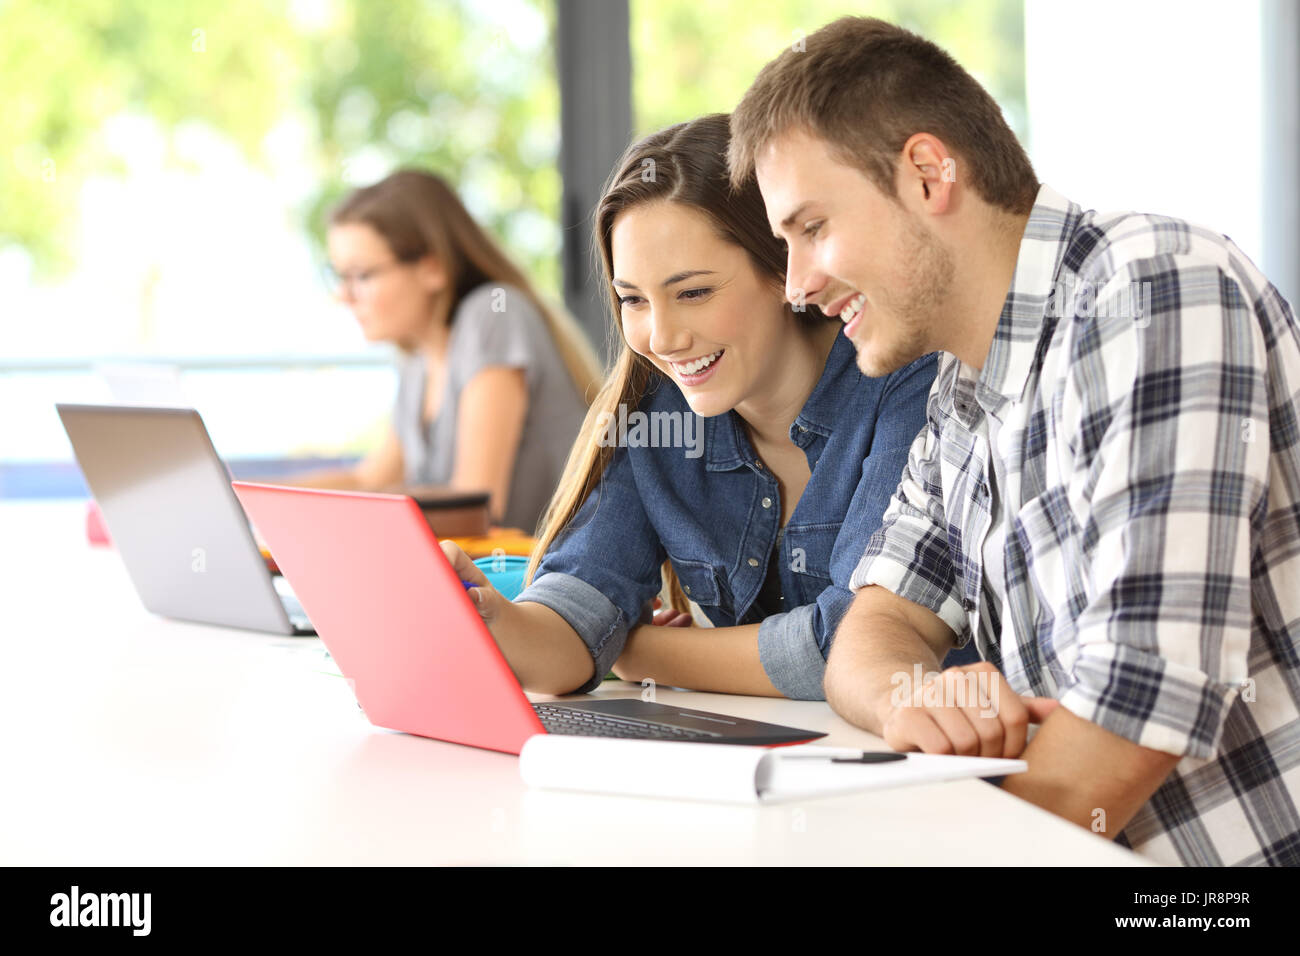 Deux étudiants heureux sur la ligne d'apprentissage avec un ordinateur dans une classe avec d'autres camarades dans l'arrière-plan Banque D'Images